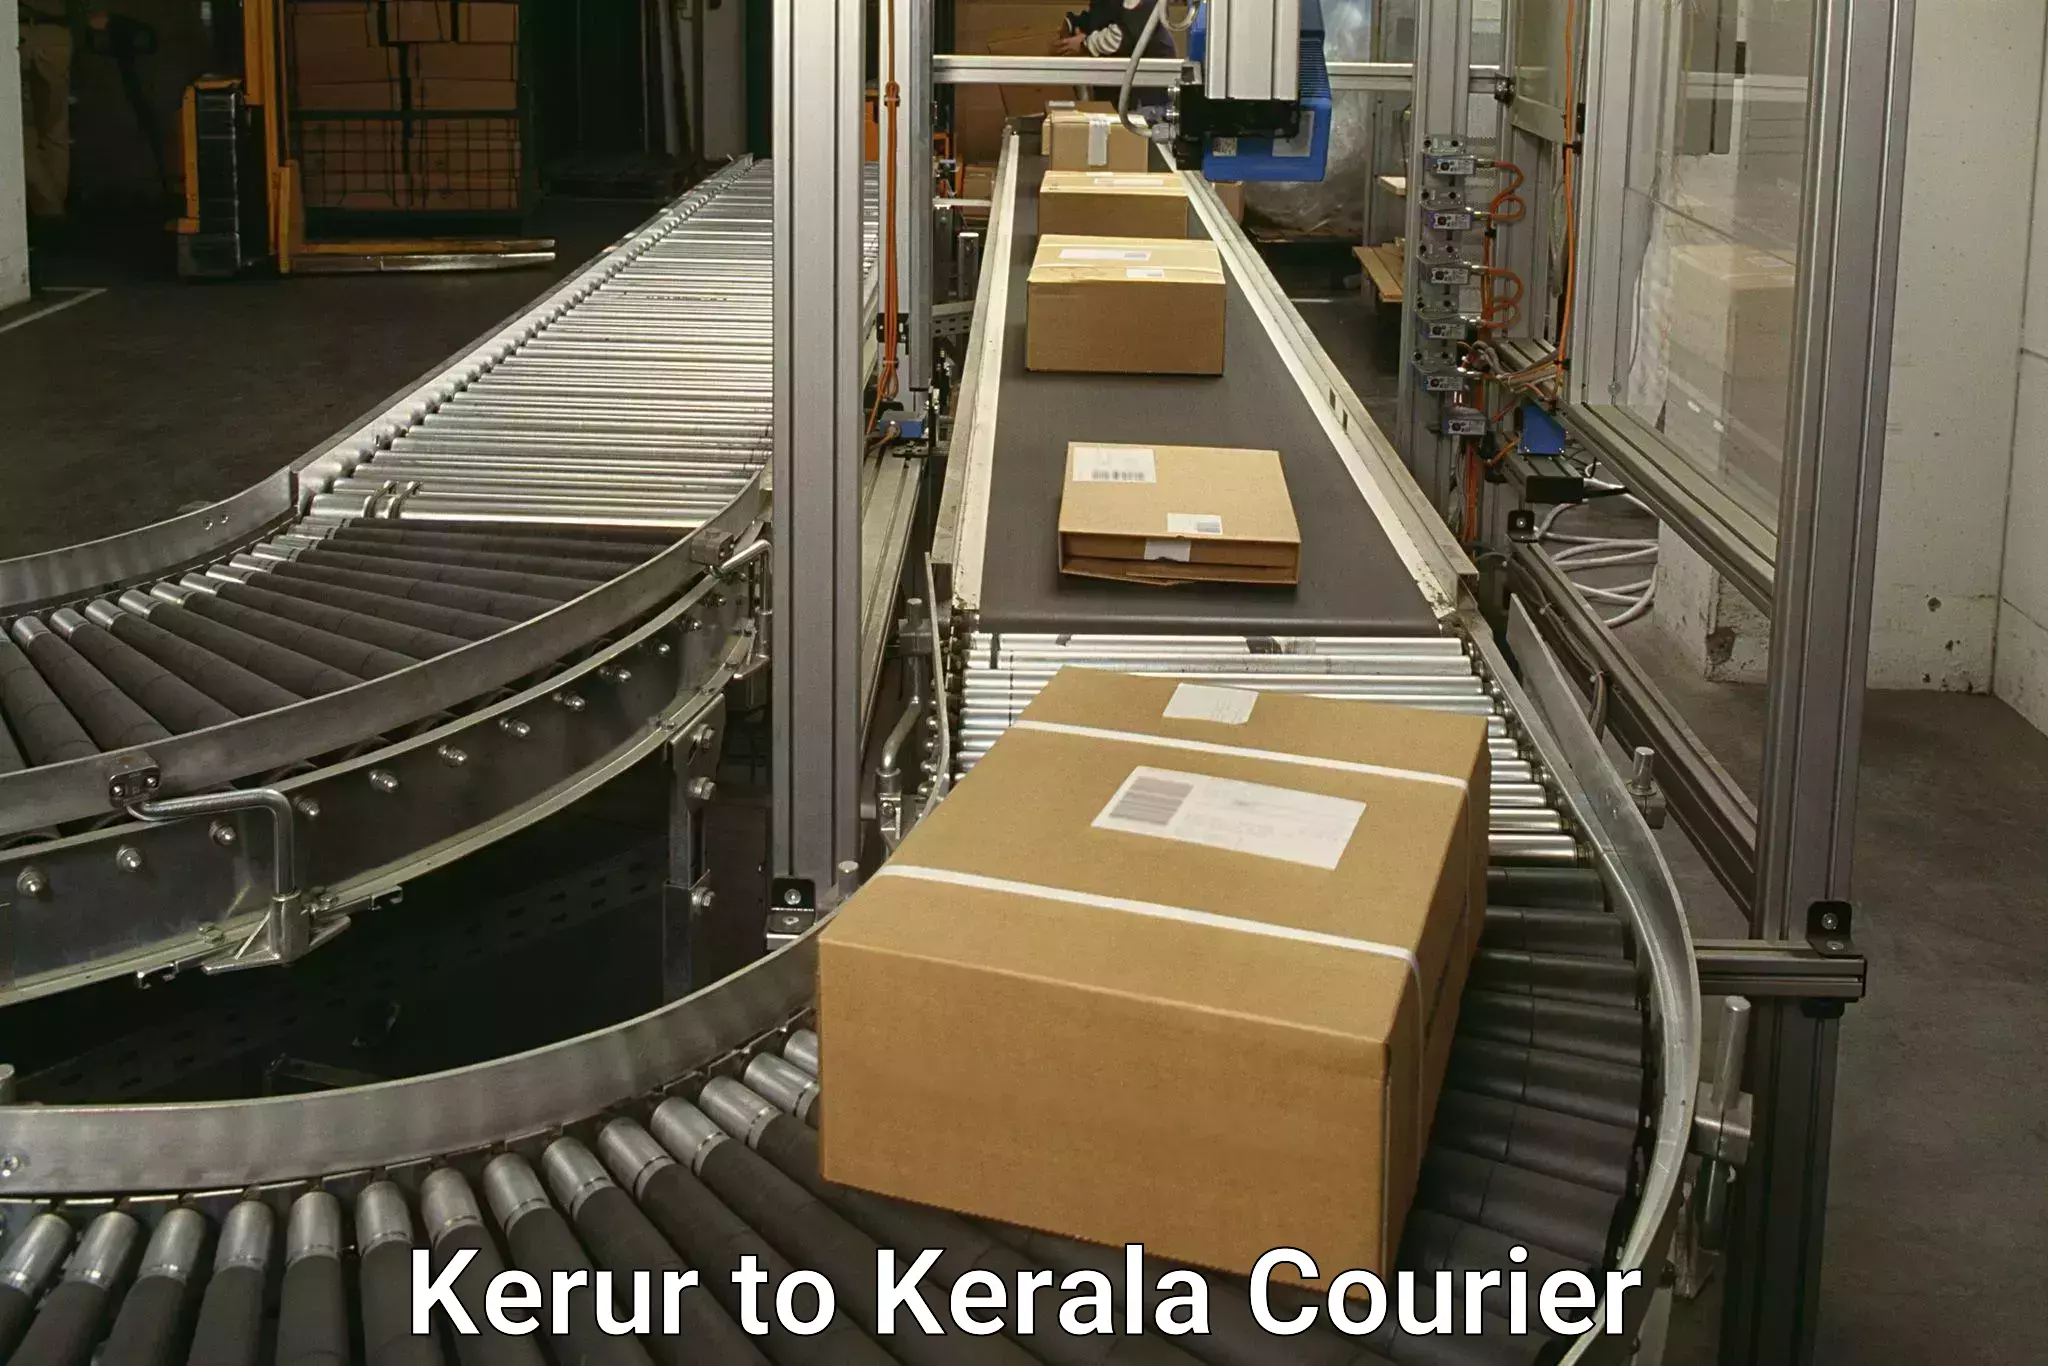 Corporate courier solutions Kerur to IIIT Kottayam